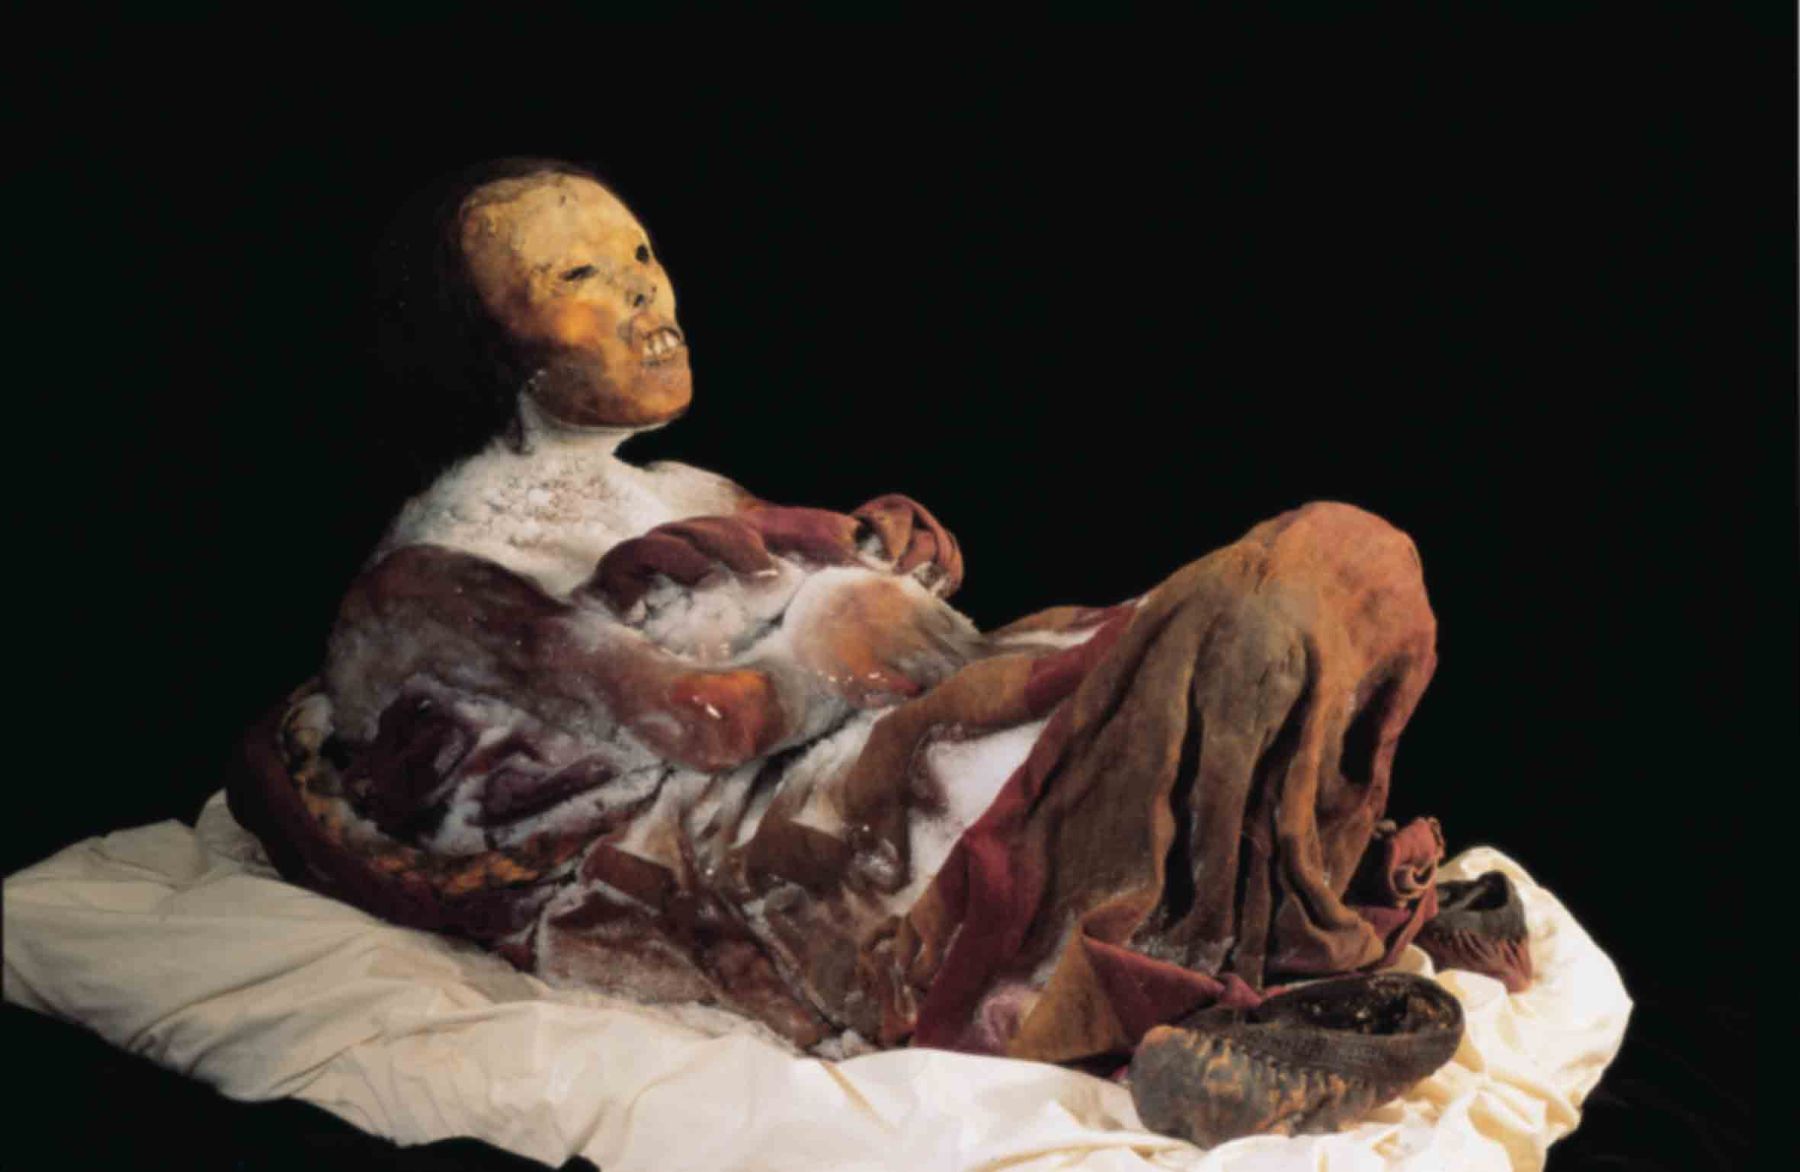 El ingreso gratuito al Museo Santuarios Andinos, que alberga a la “La Dama del Ampato”, conocida también como la momia “Juanita”, provocó en la población arequipeña gran expectativa. ANDINA/archivo